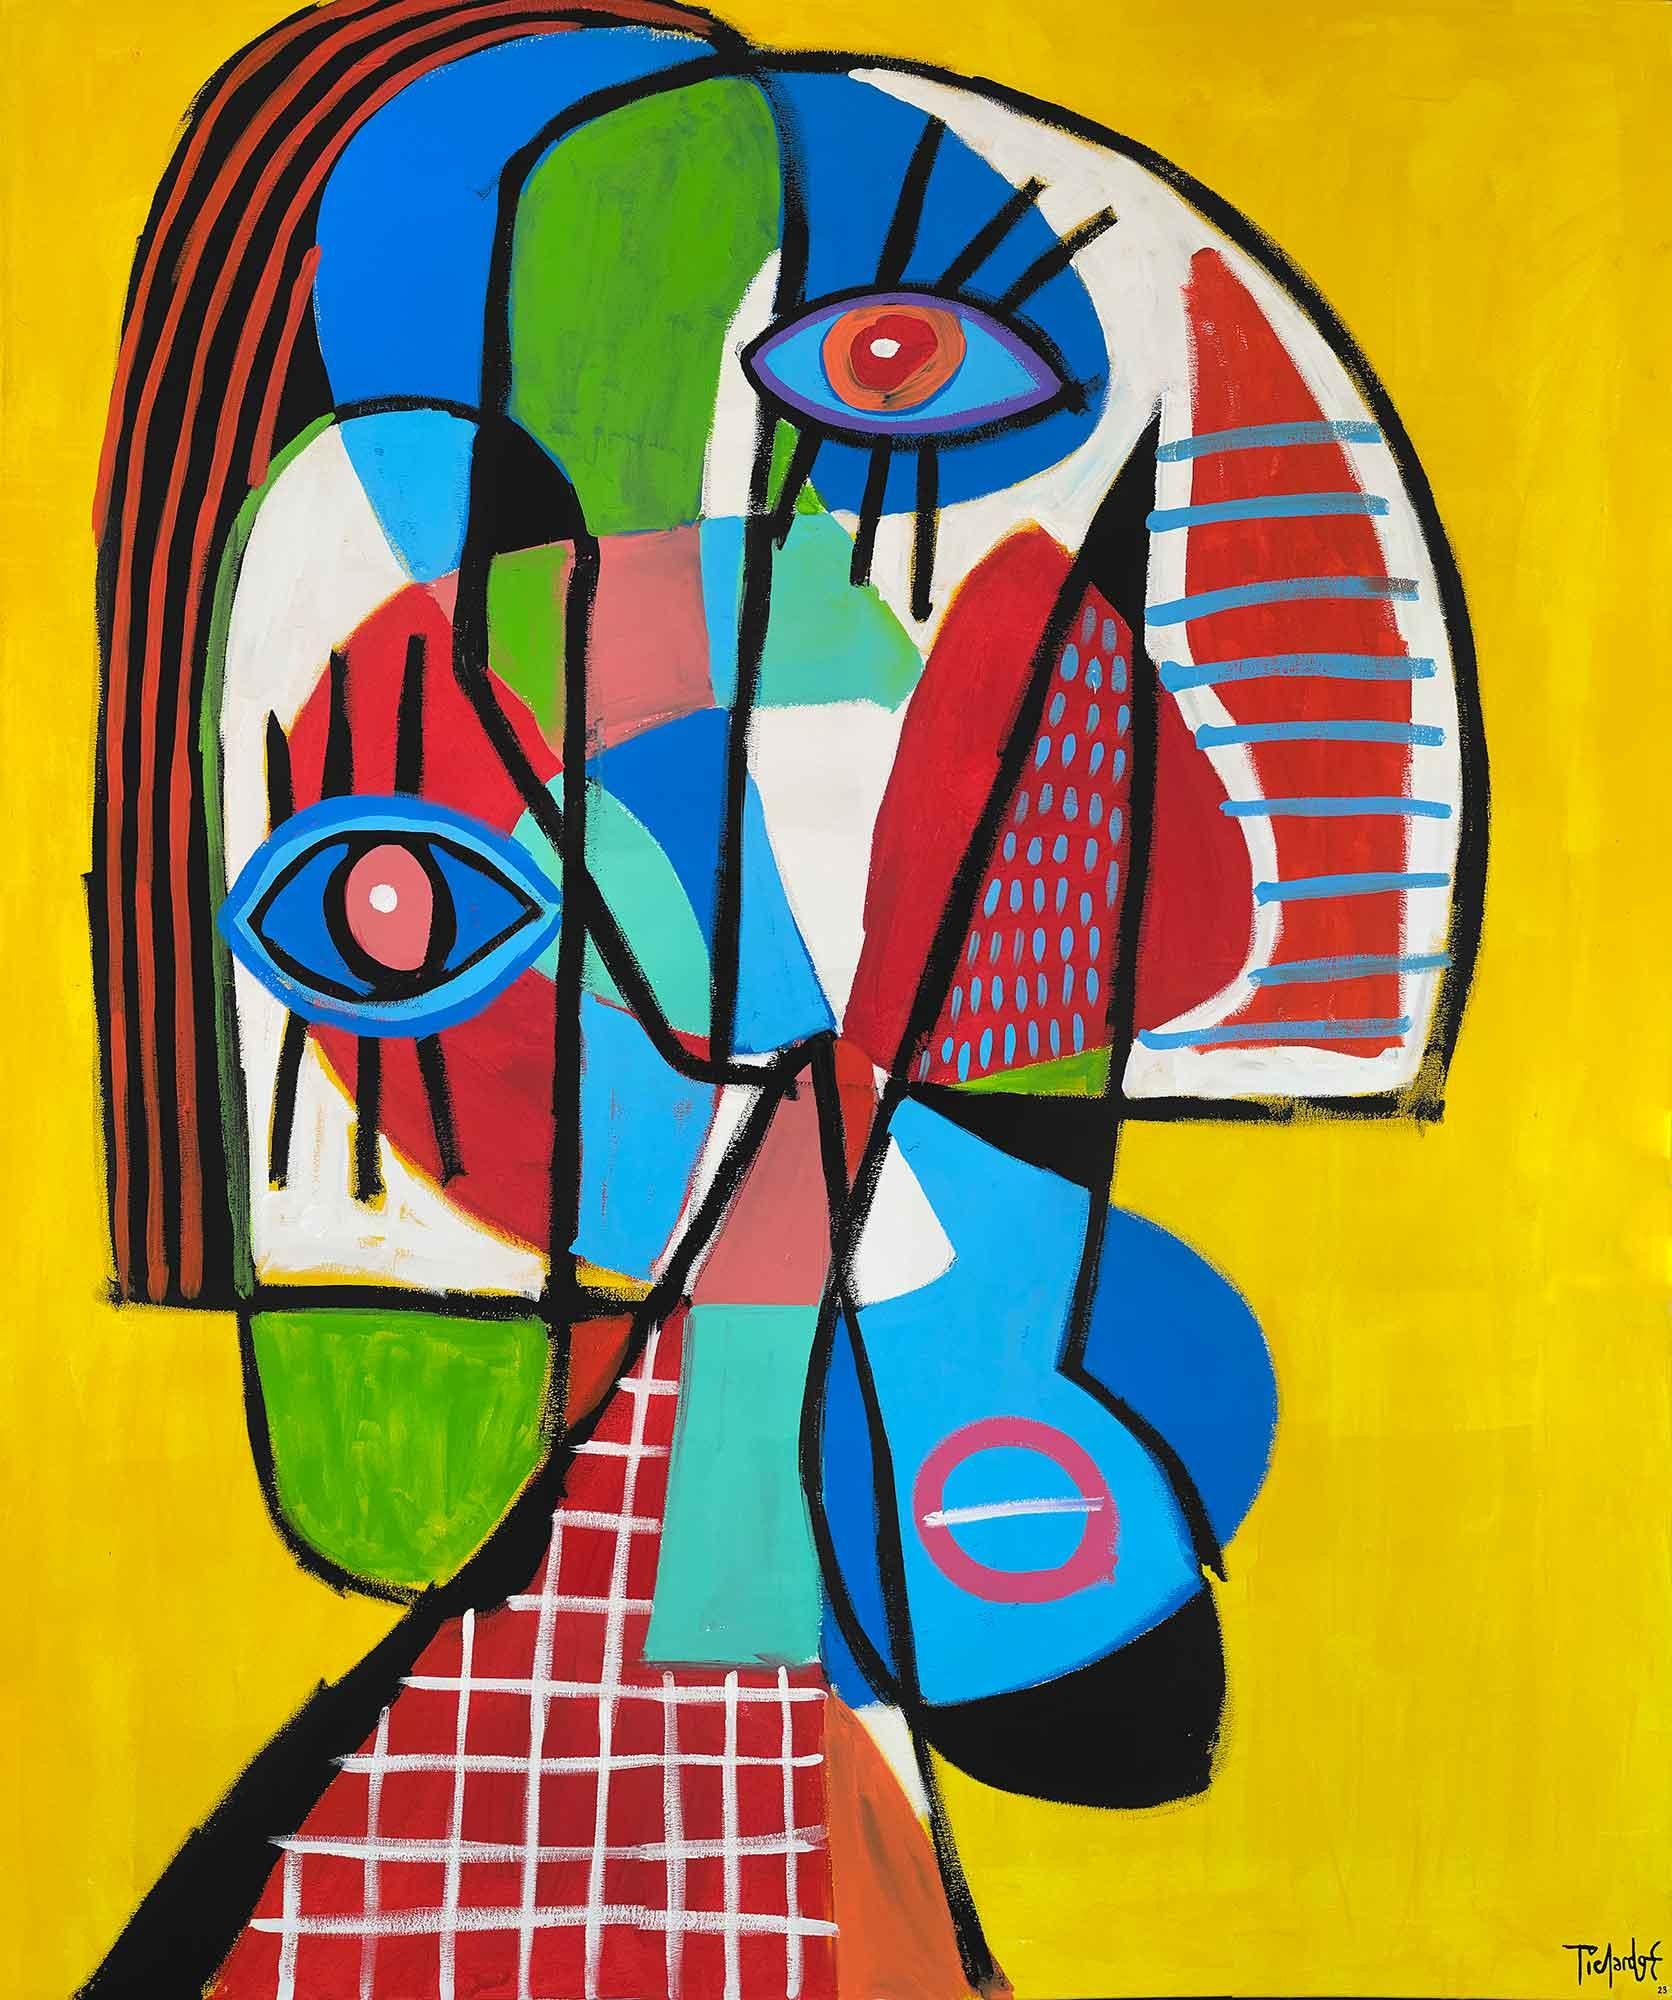 Abstract Painting Enrique Pichardo - Retrato en Amarillo, Art contemporain, Peinture abstraite, 21ème siècle